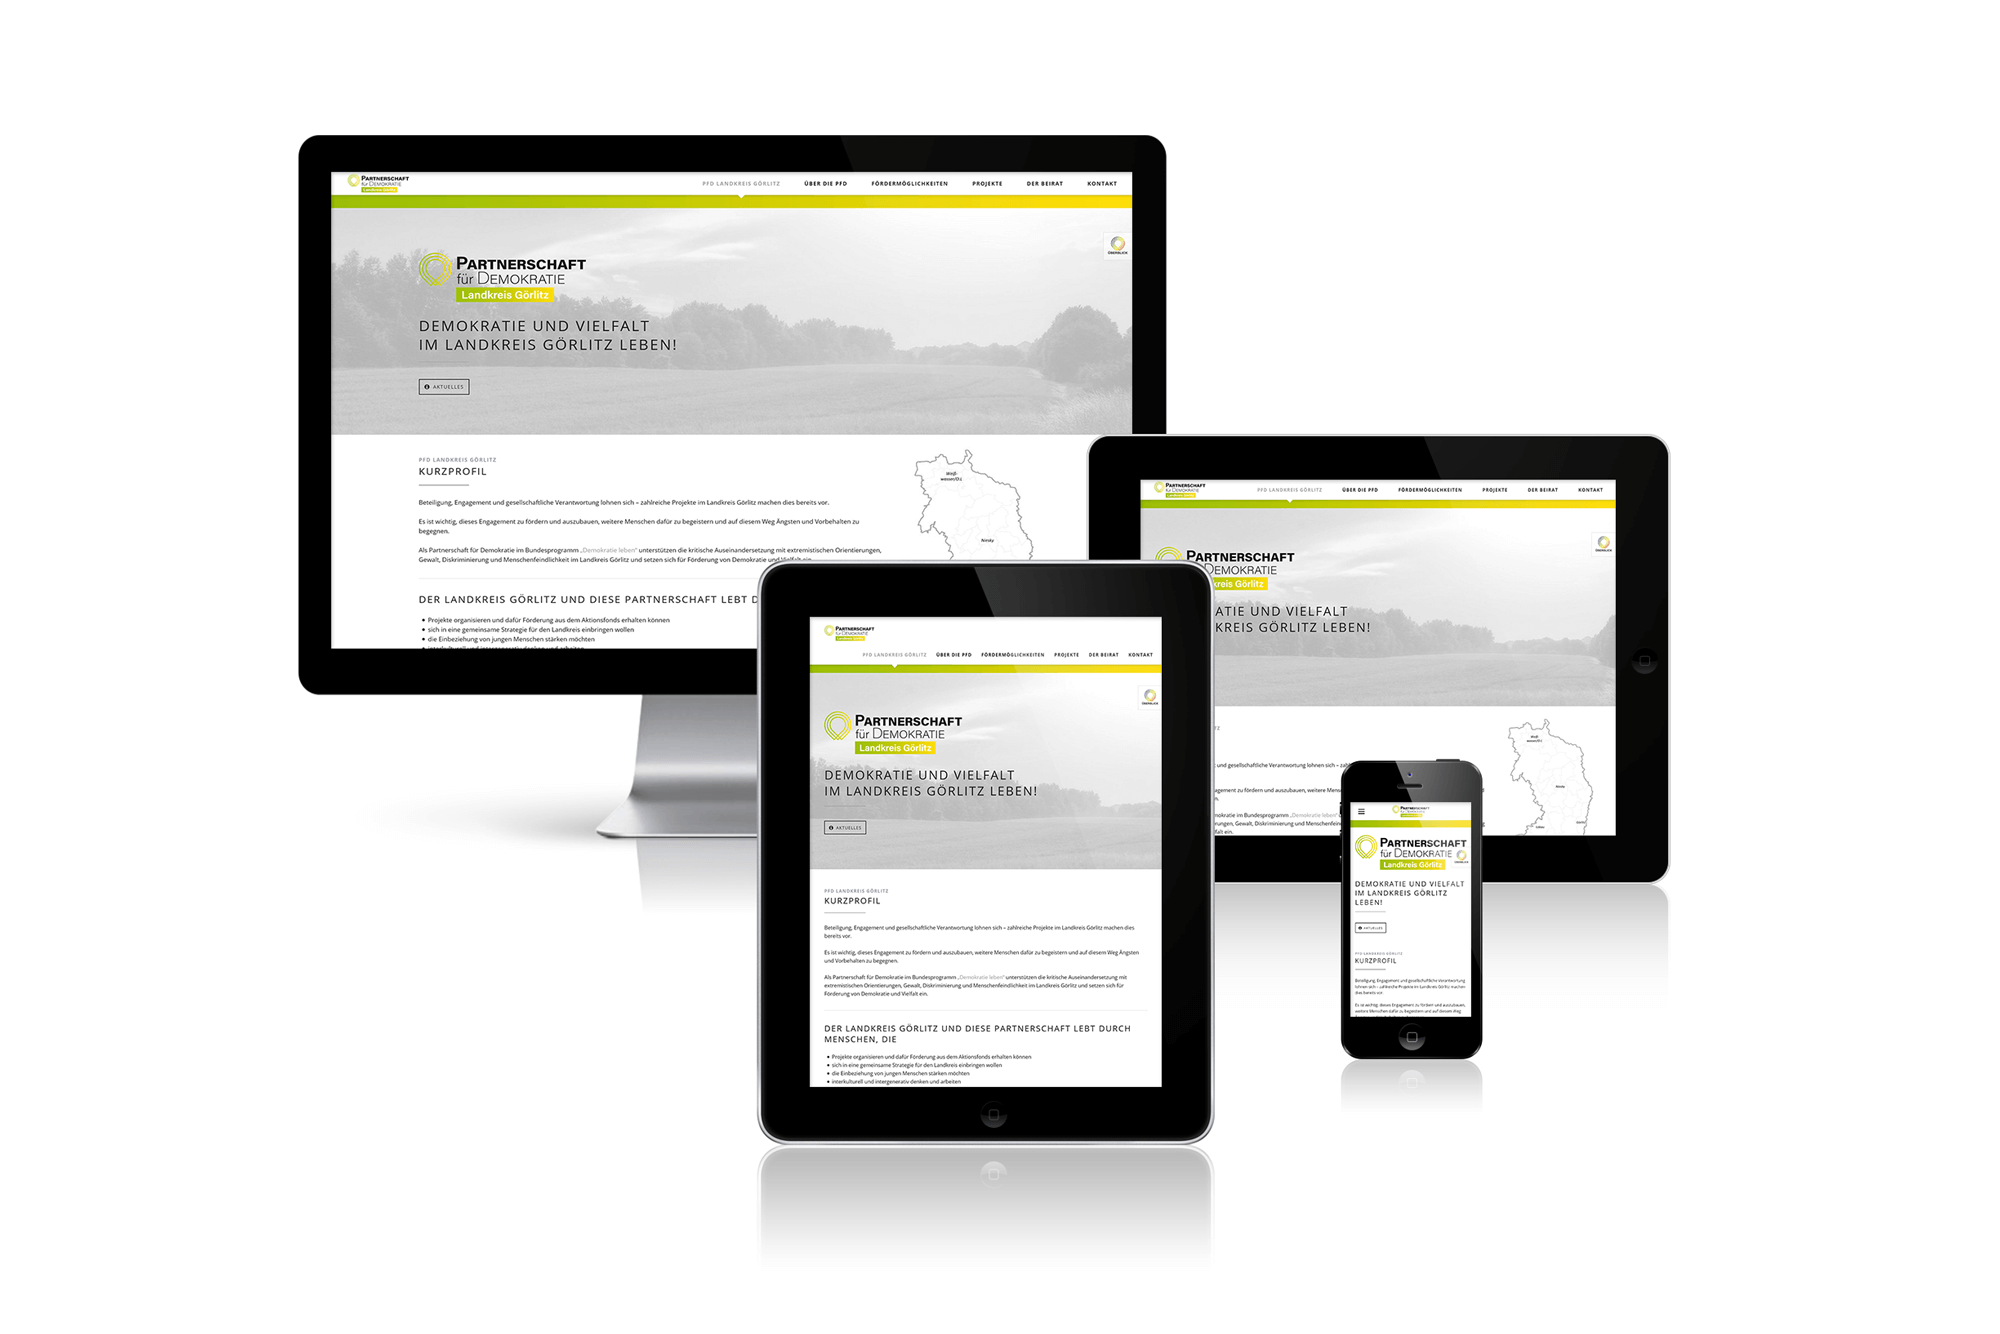 Responsiv Webdesign Webseite Partnerschaft für Demokratie Landkreis Görlitz